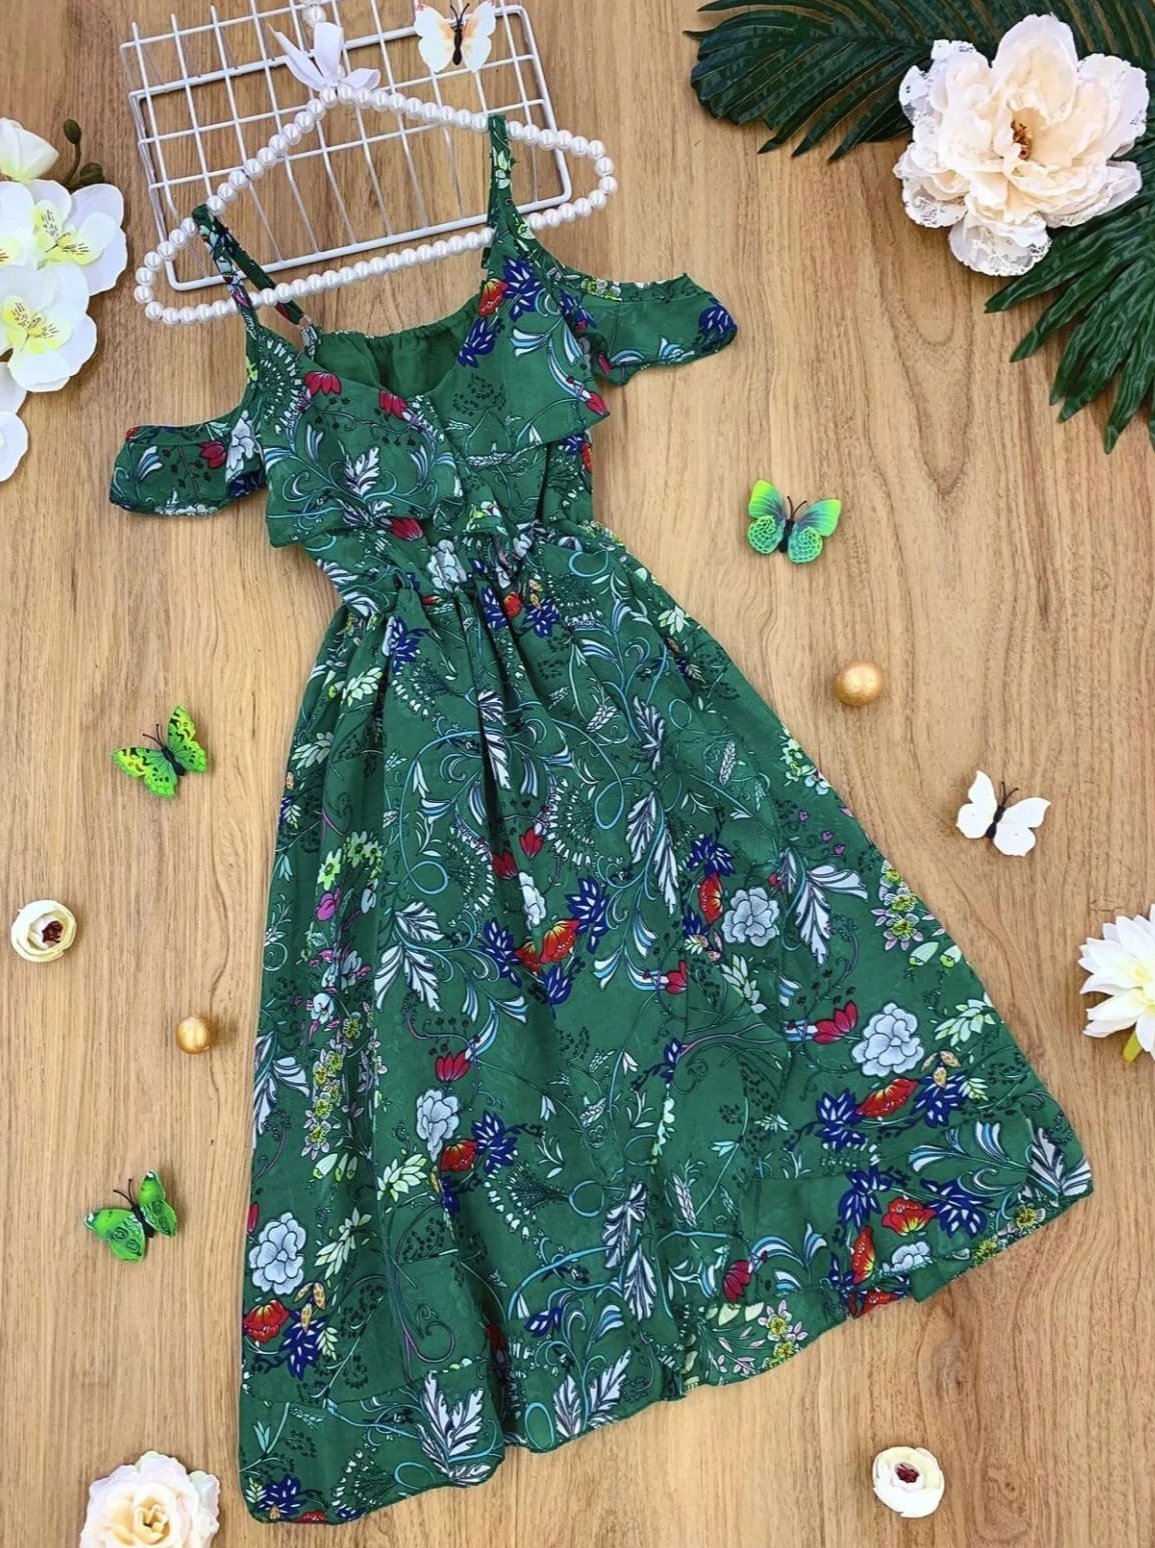 Girls Floral Boho Styles Ruffled Dress - Green / 4Y/5Y - Girls Spring Casual Dress